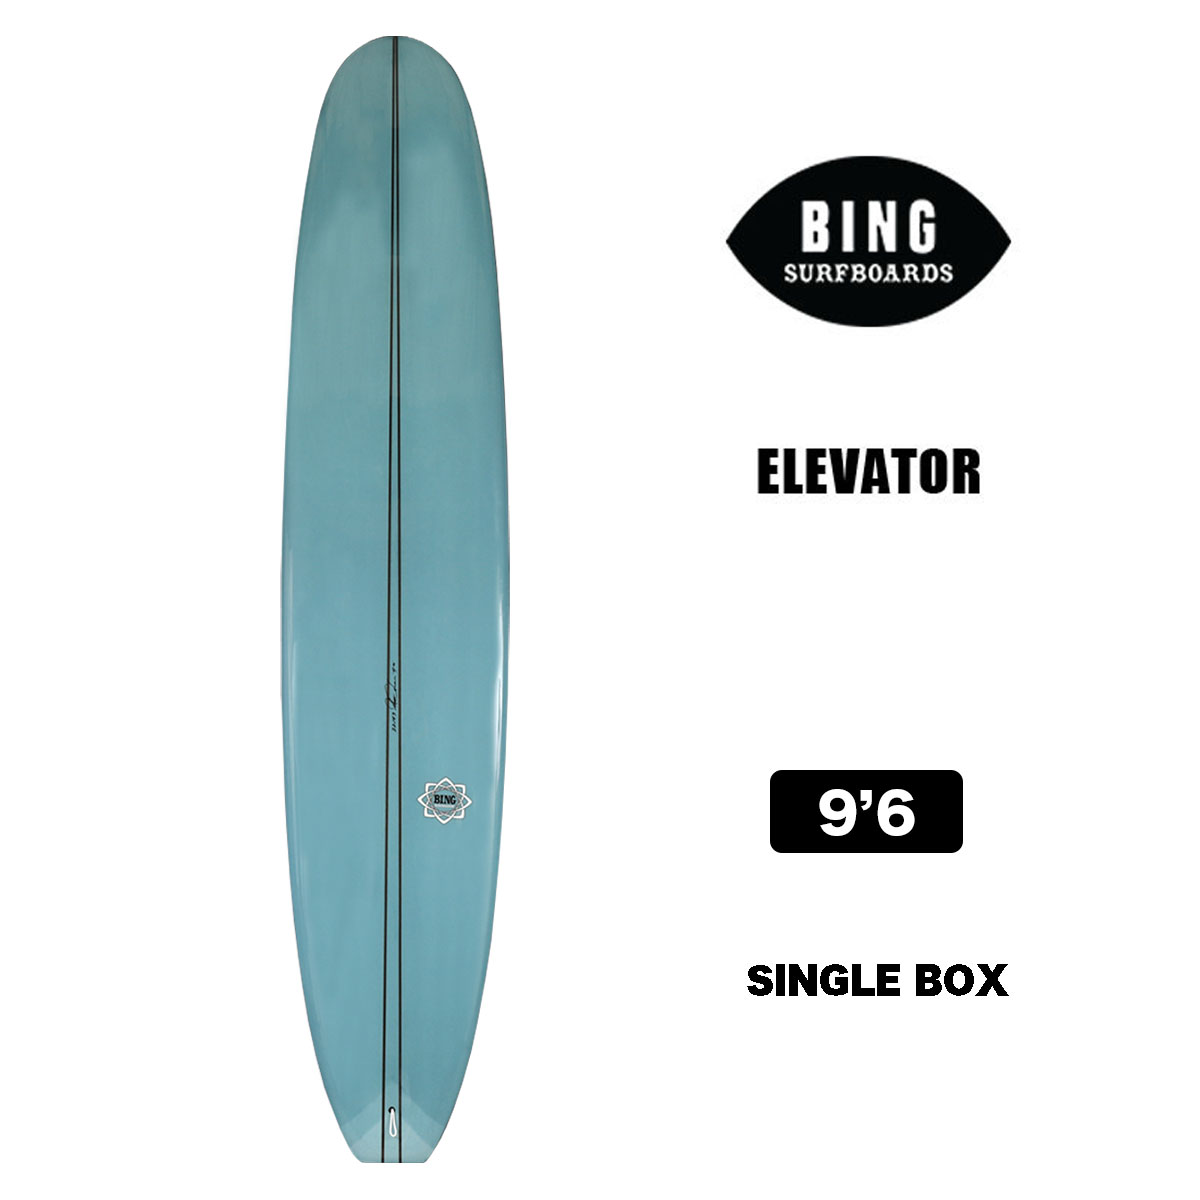 【10%OFF ウィンターセール】サーフボード ビングサーフボード BING SURFBOARDS ELEVATOR 9'6 BLUE エレベーター  9.6 ロングボード シングルフィン サーフィン ライト ブルー 【22193】-ジャックオーシャンスポーツ